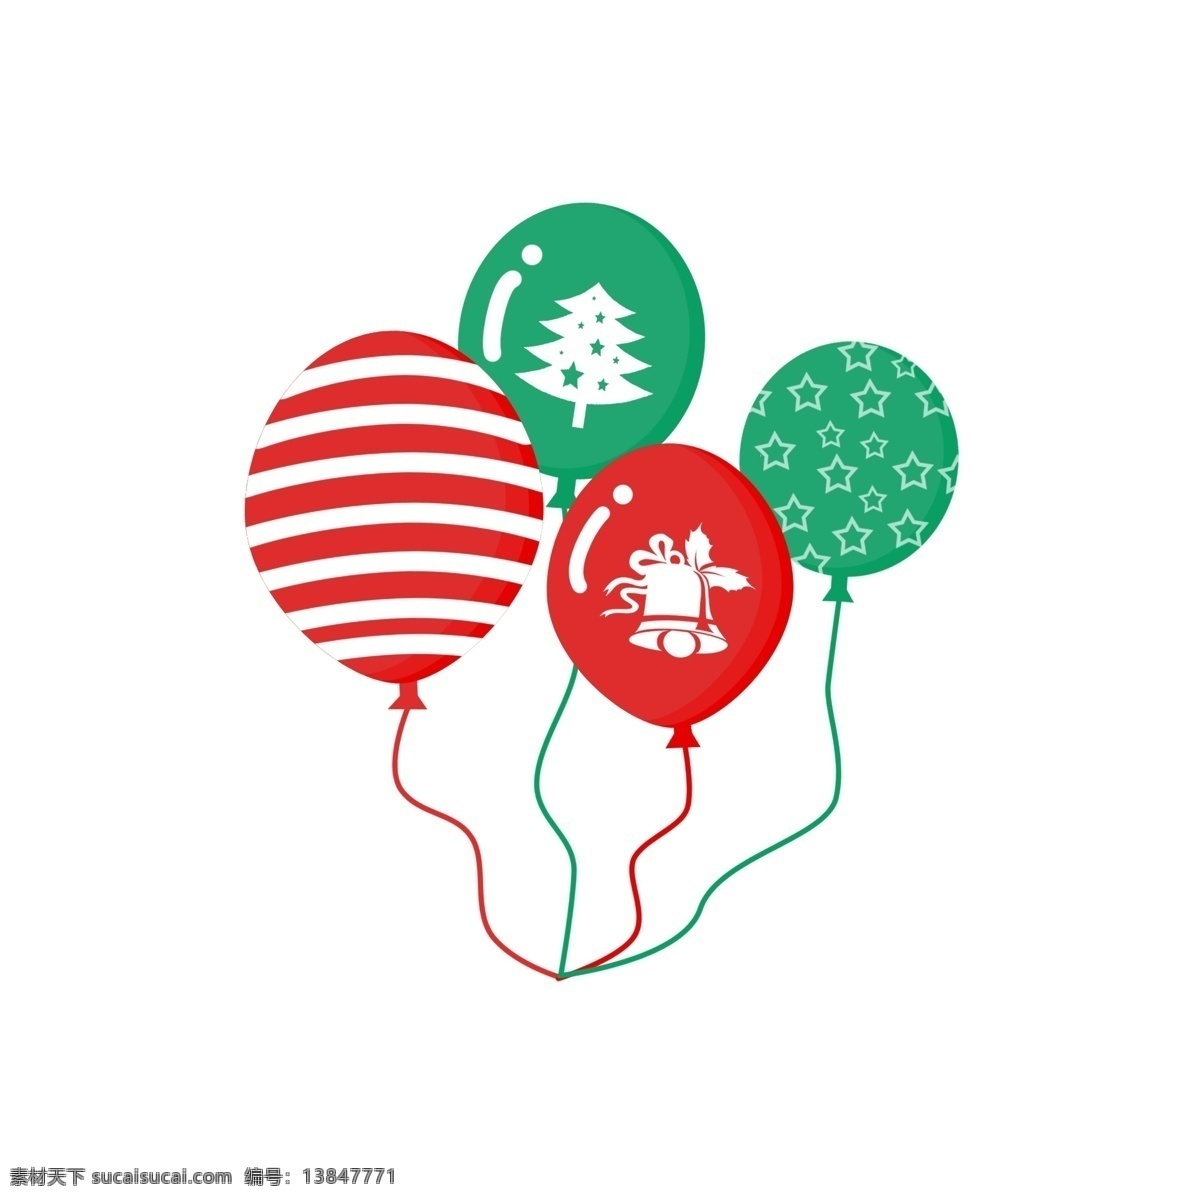 圣诞节 漂浮 气球 卡通 红色 绿色 创意 漂浮气球 卡通气球 圣诞节装饰 手绘